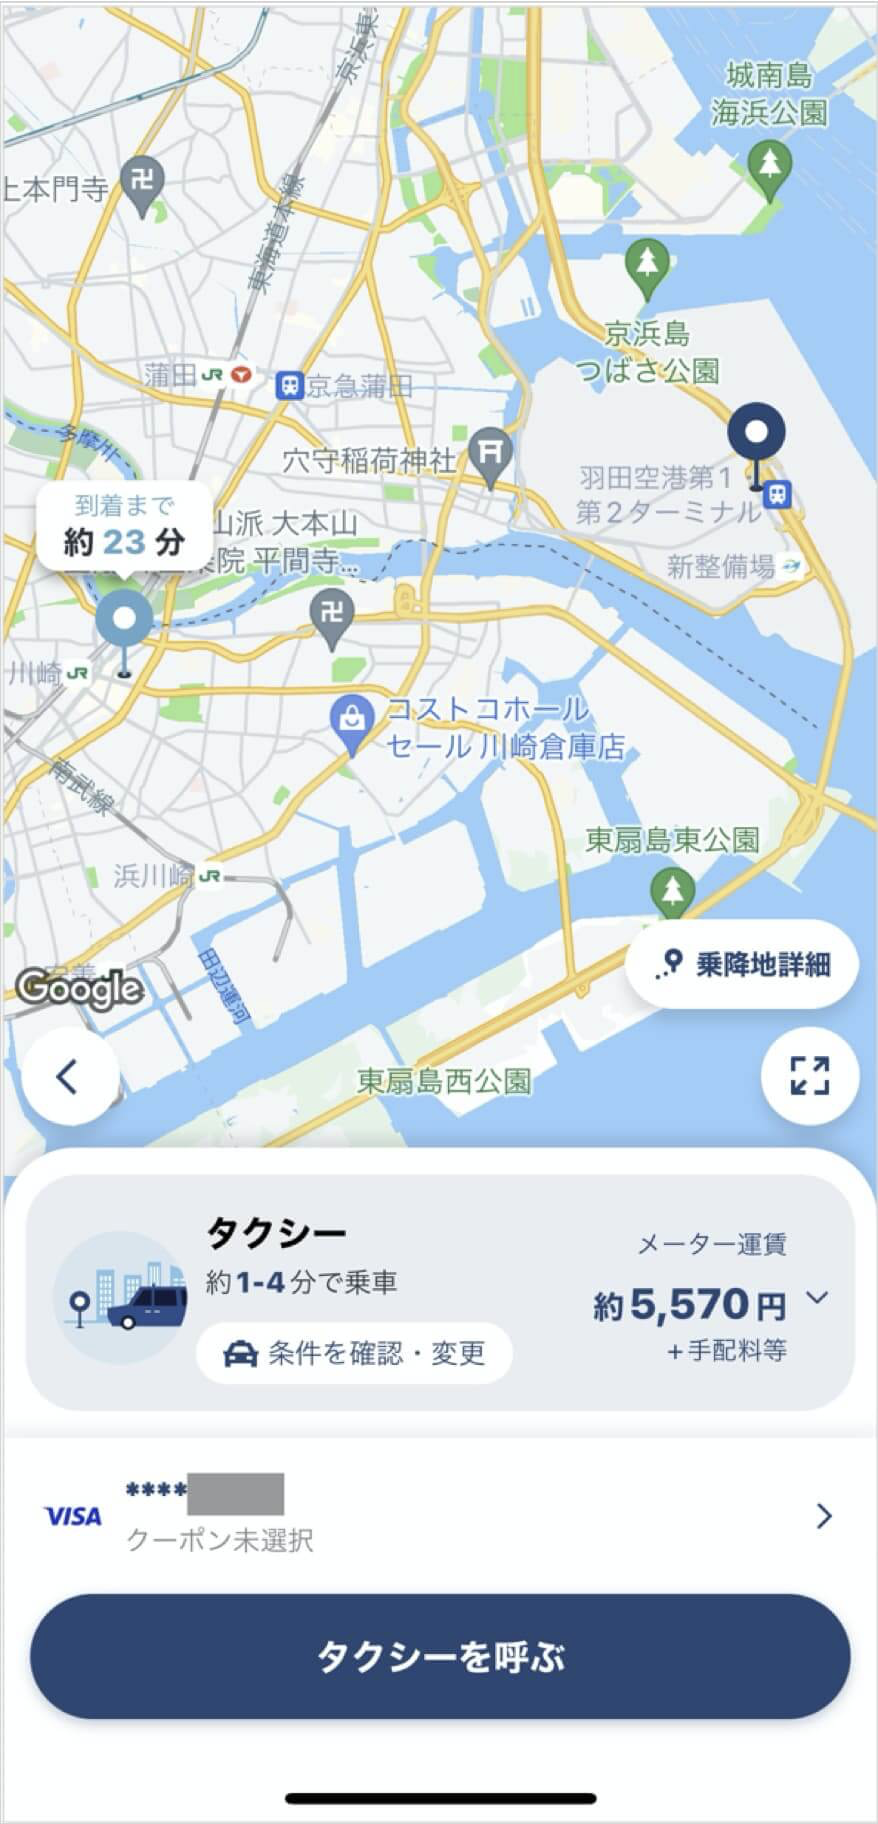 羽田空港から川崎までのタクシー料金・所要時間まとめ